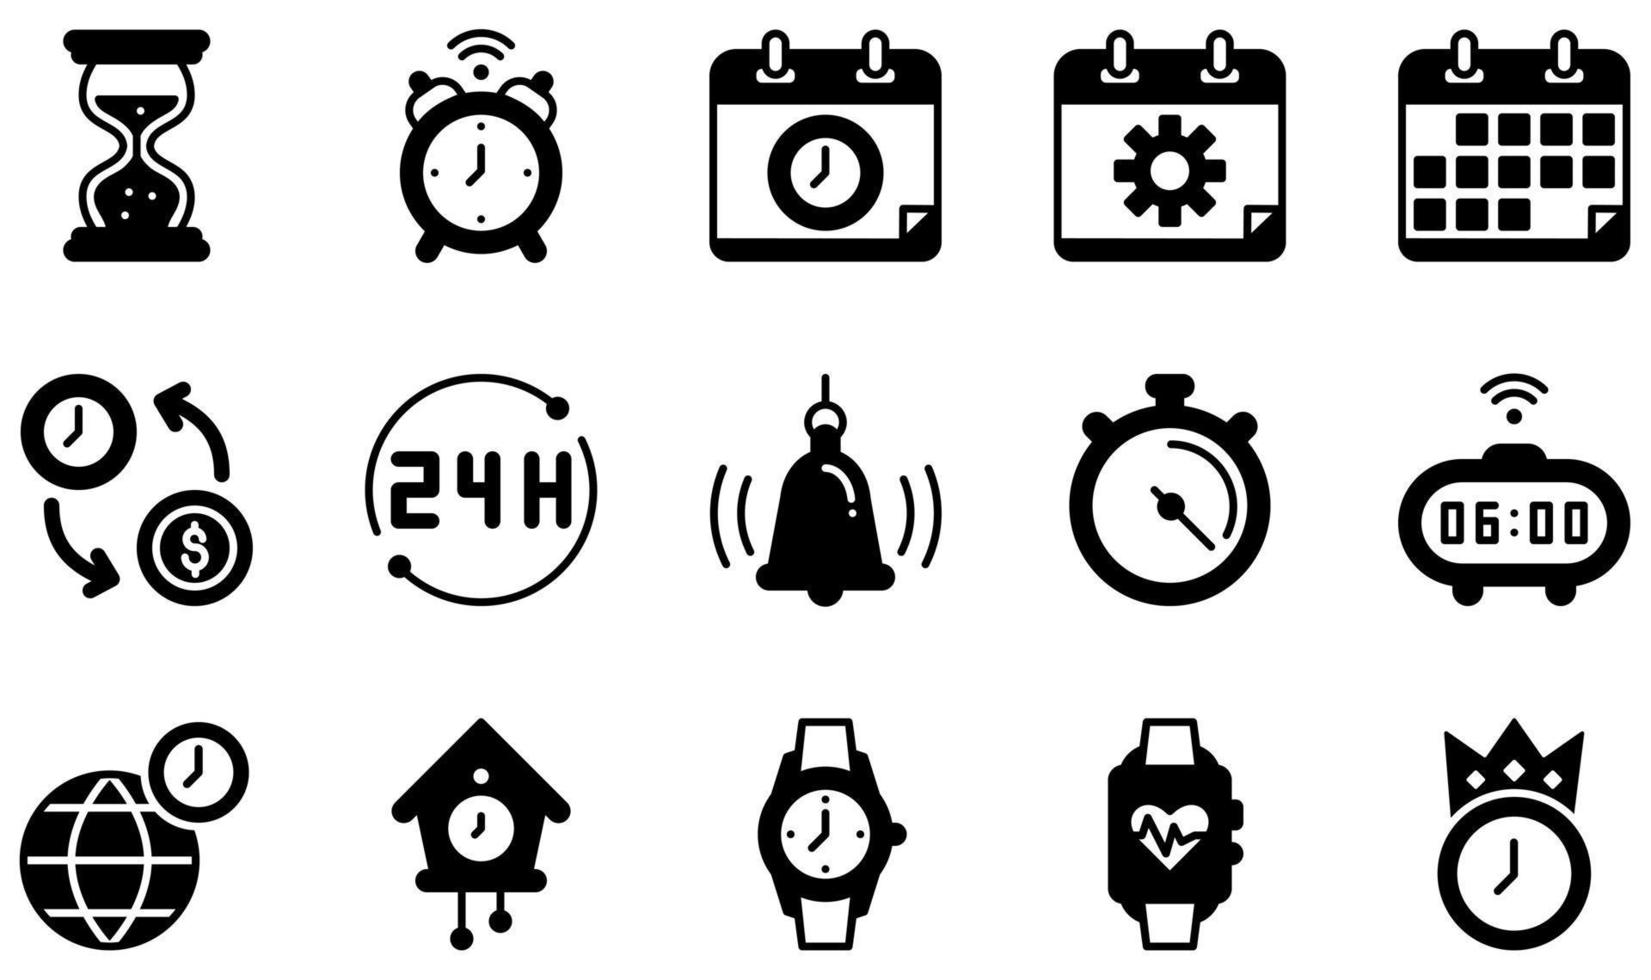 uppsättning vektor ikoner relaterade till tid. innehåller sådana ikoner som timglas, väckarklocka, tidshantering, kalender, tid är pengar, stoppur och mer.